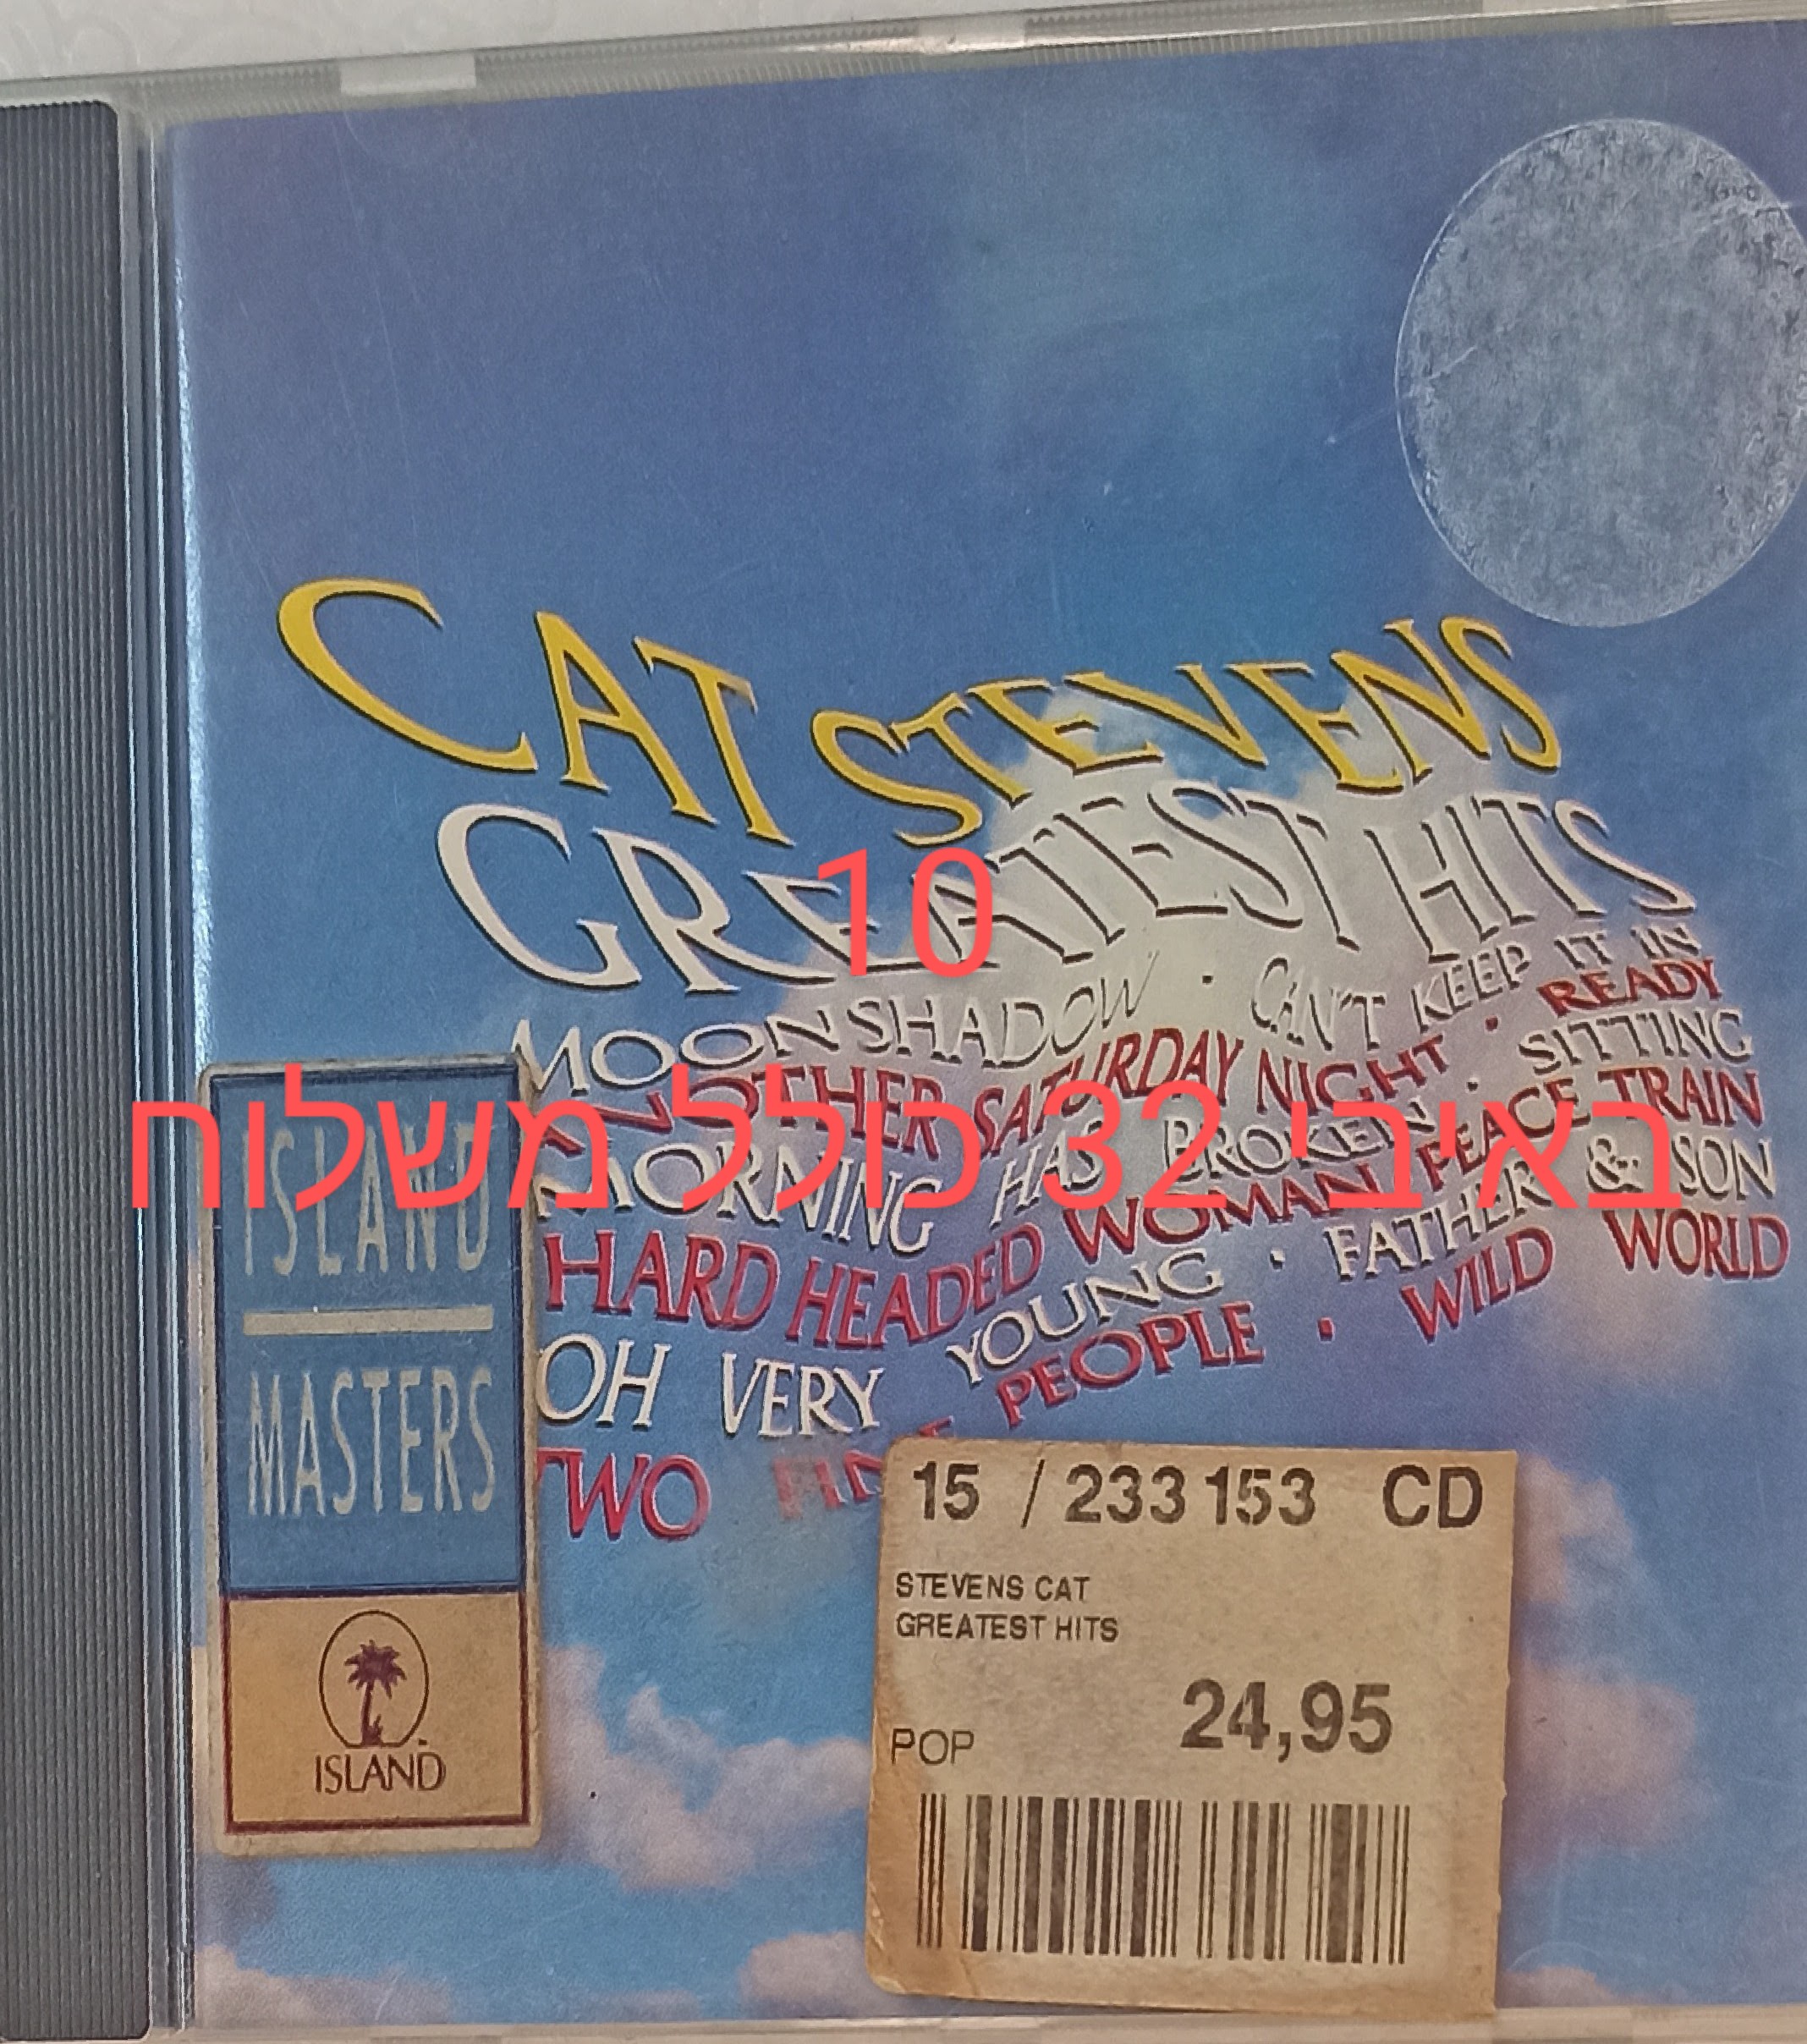 תמונה 1 ,דיסק של cat stevens  למכירה ביבנה אספנות  תקליטים ודיסקים